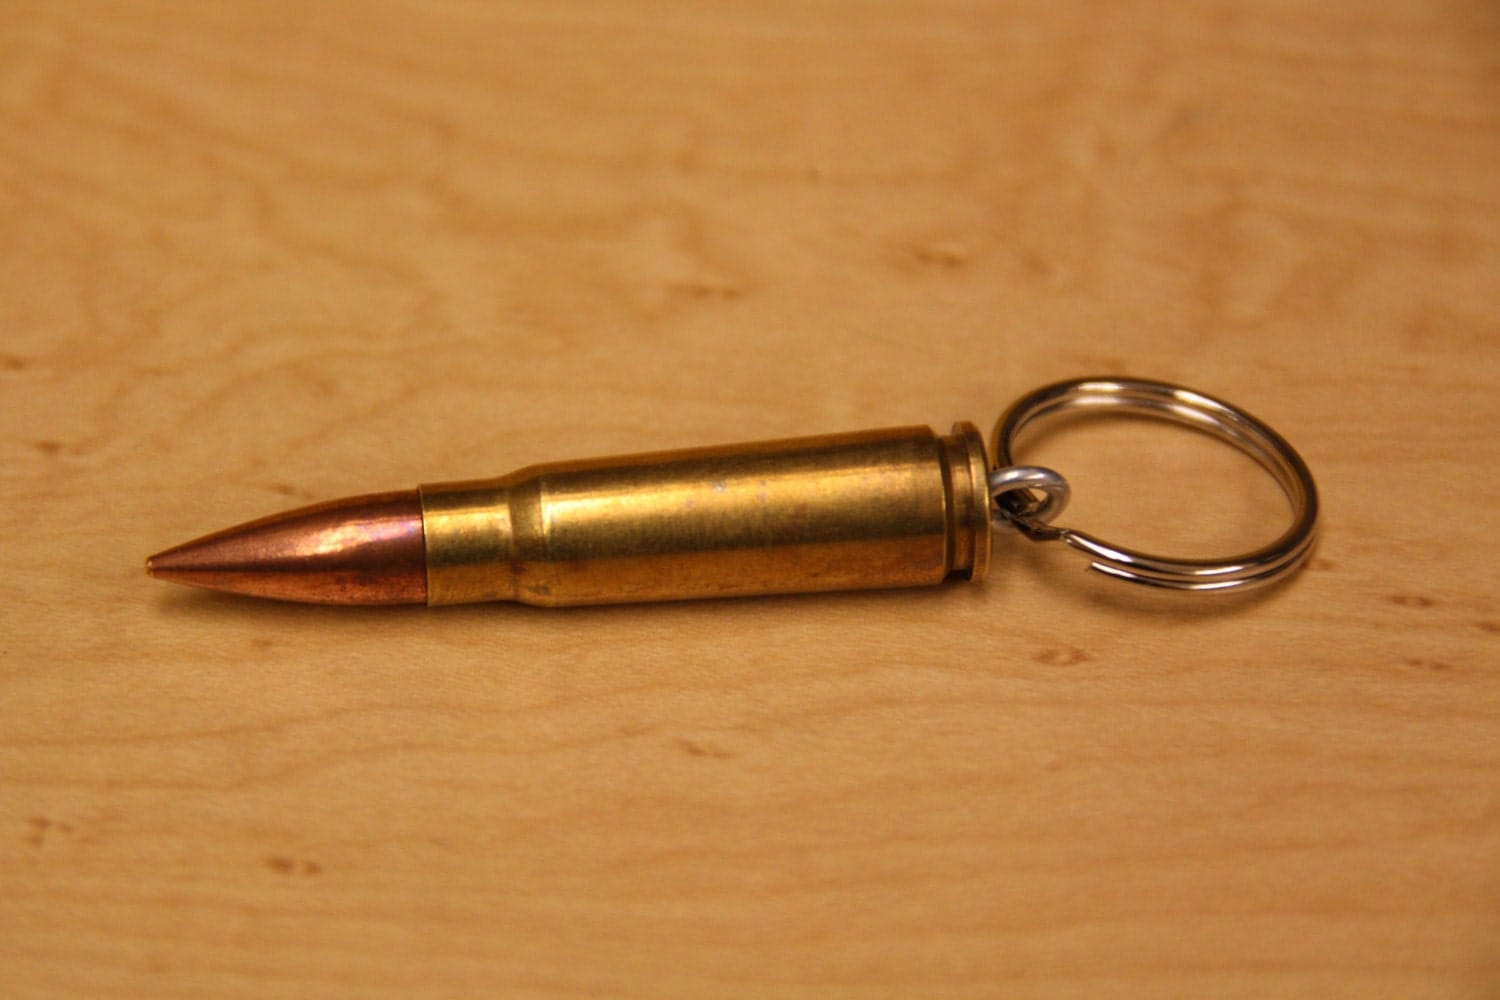 AK47 7.62x39 Bullet Key Chain Perfect Stocking Stuffer